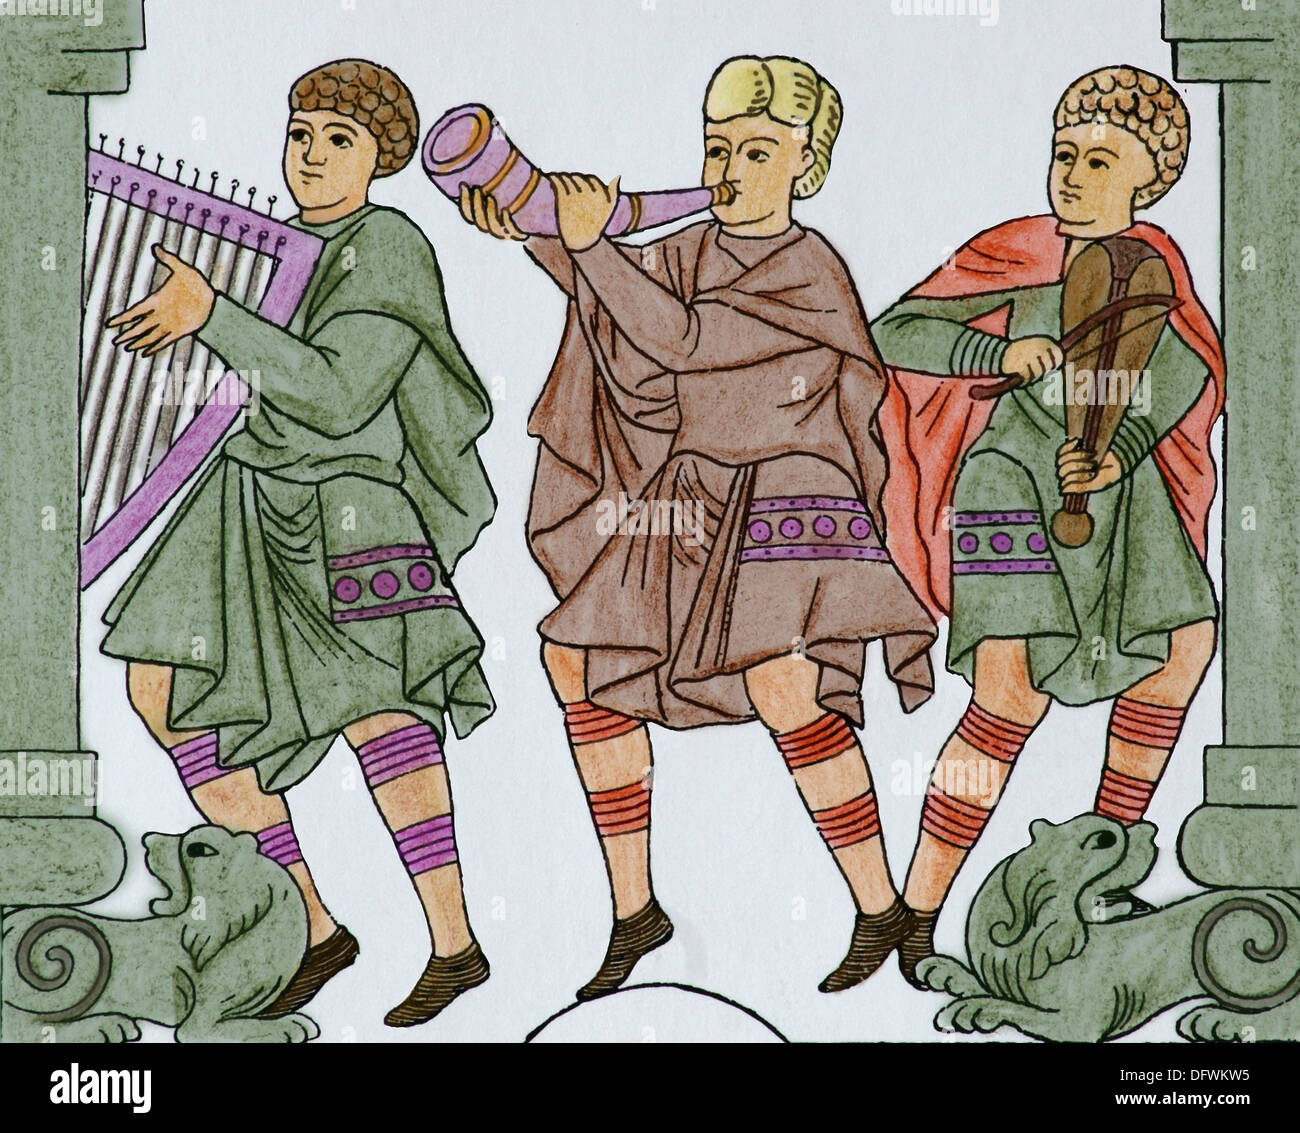 La société. C. 1000 AD. L'Allemagne. La musique. Les jeunes hommes. Gravure du xixe siècle. Plus tard la couleur. Banque D'Images